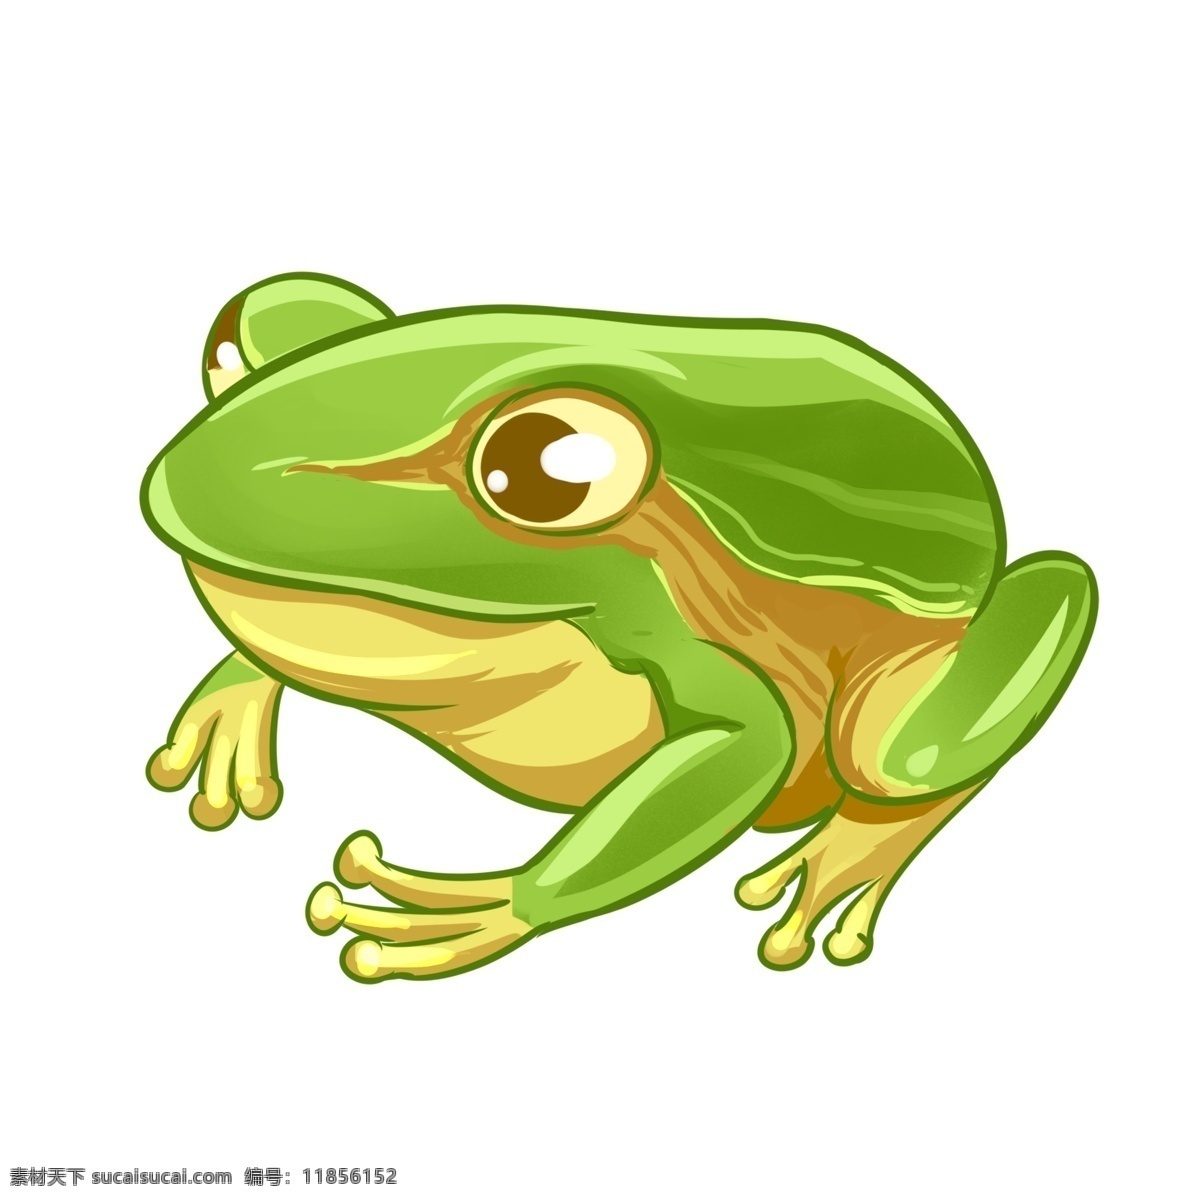 卡通动物青蛙 卡通 手绘 青蛙 动物 卡通设计